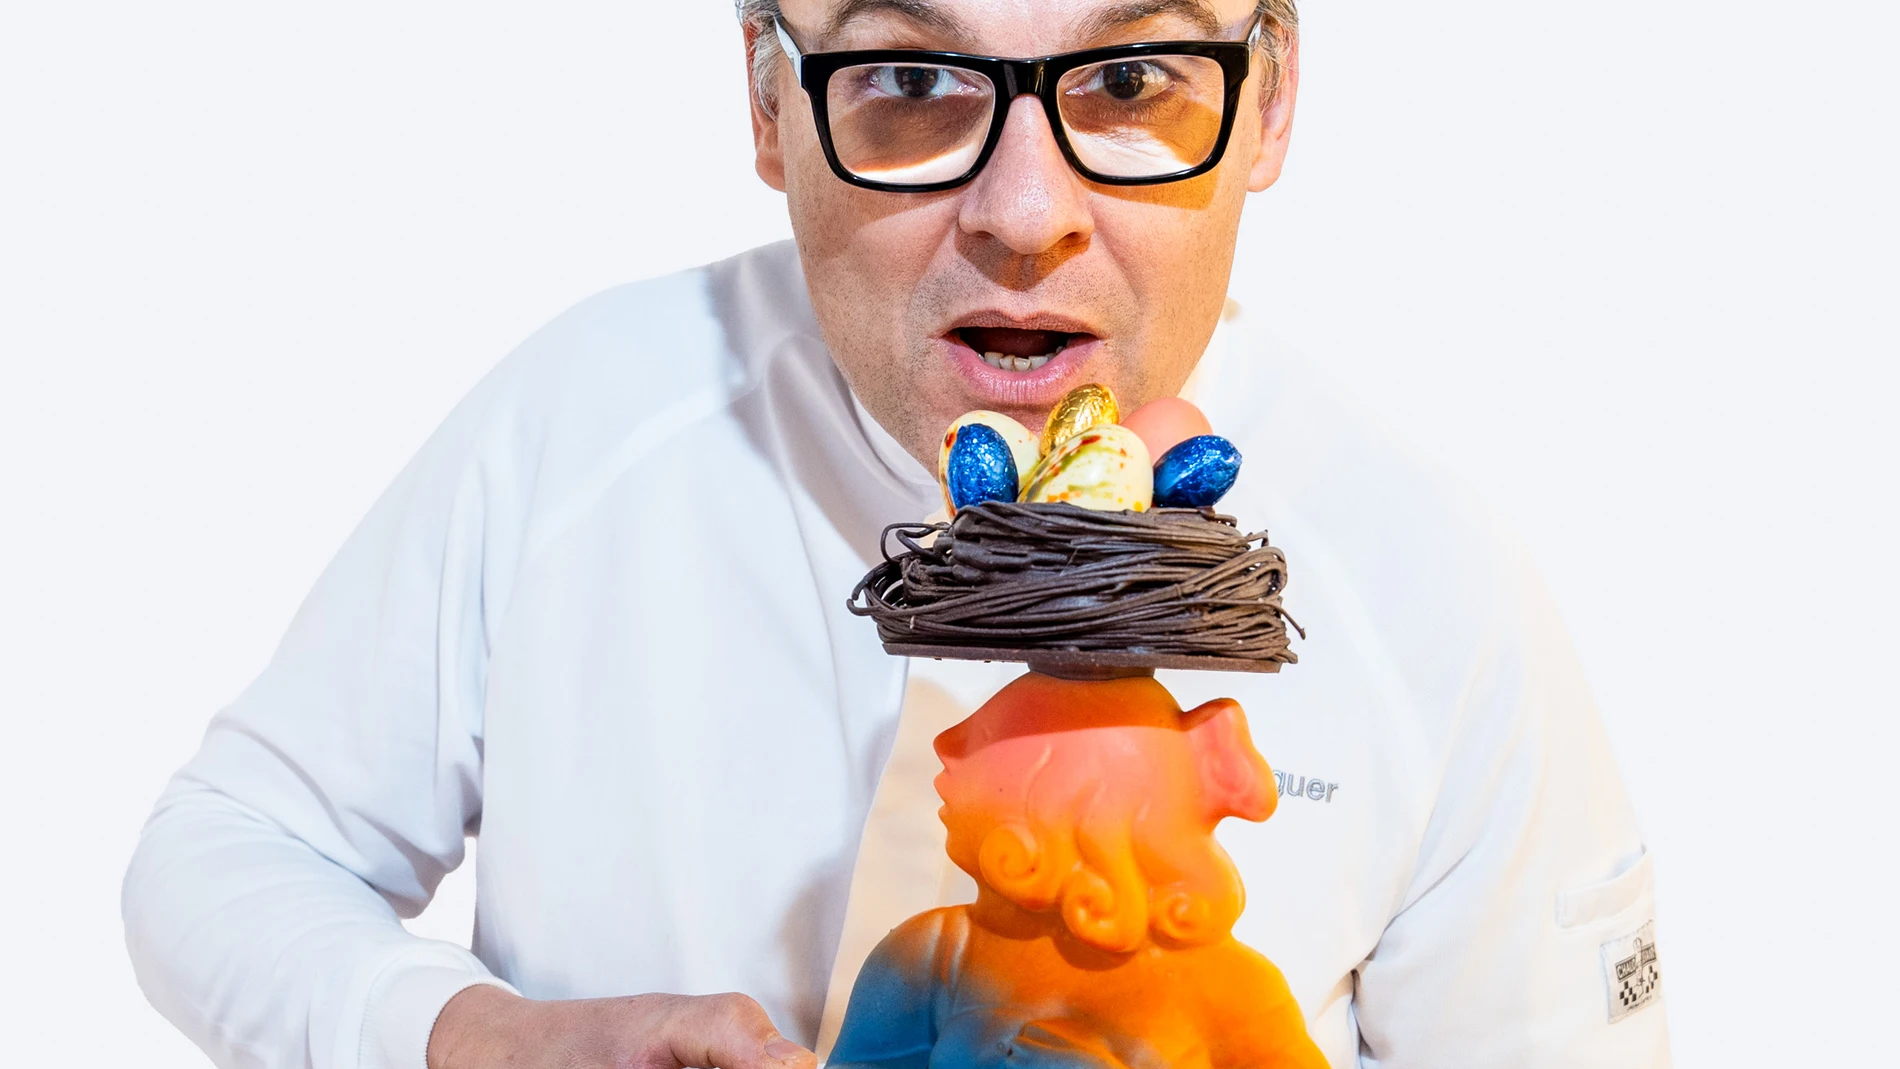 Oriol Balaguer está considerado uno de los mejores pasteleros del mundo